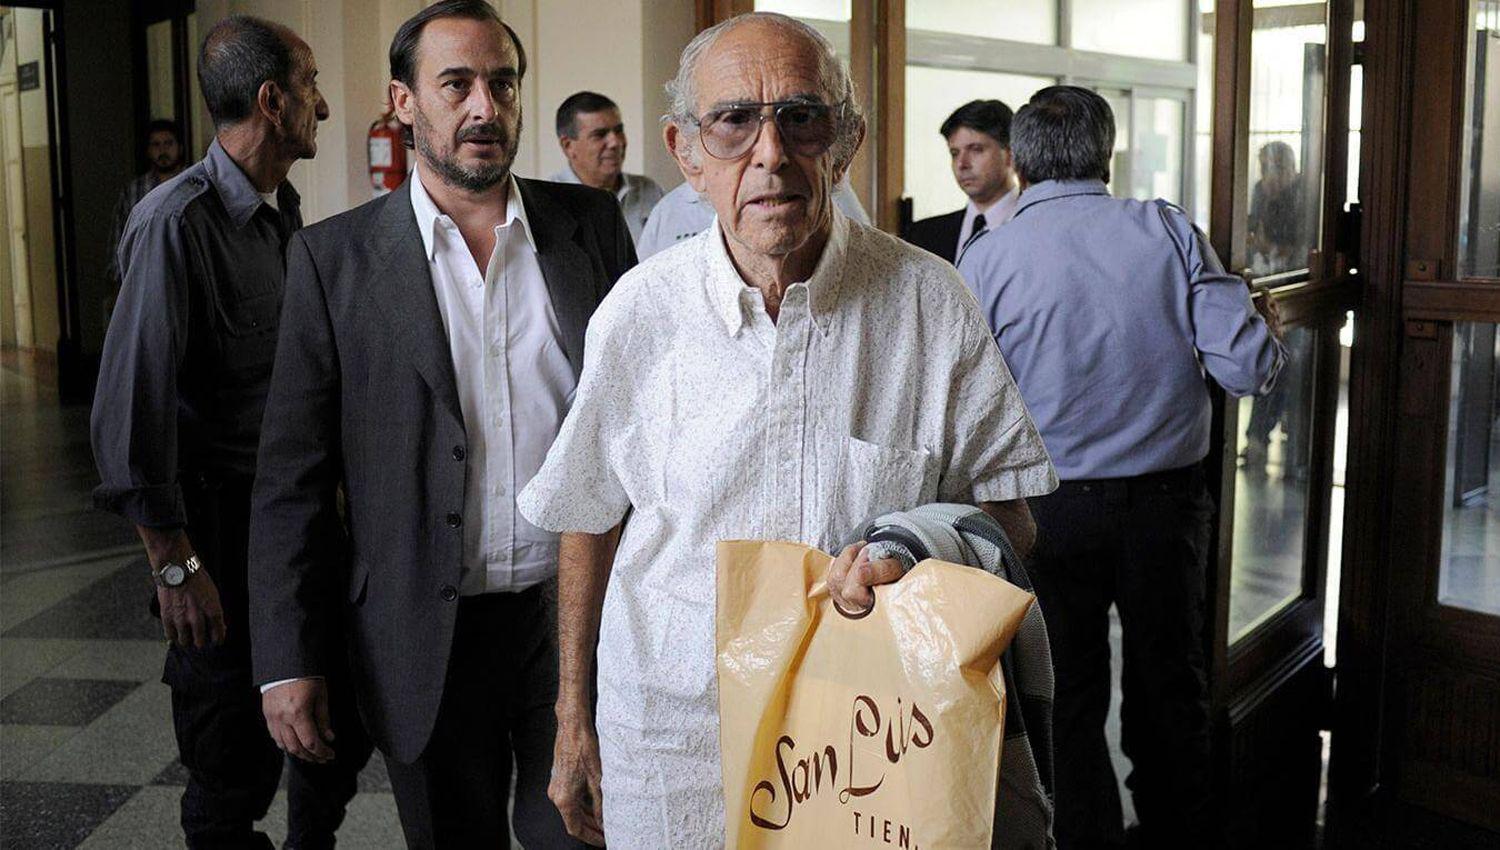 Murioacute Ricardo Alberto Barreda el odontoacutelogo que estaba preso por homicidio cuaacutedruple